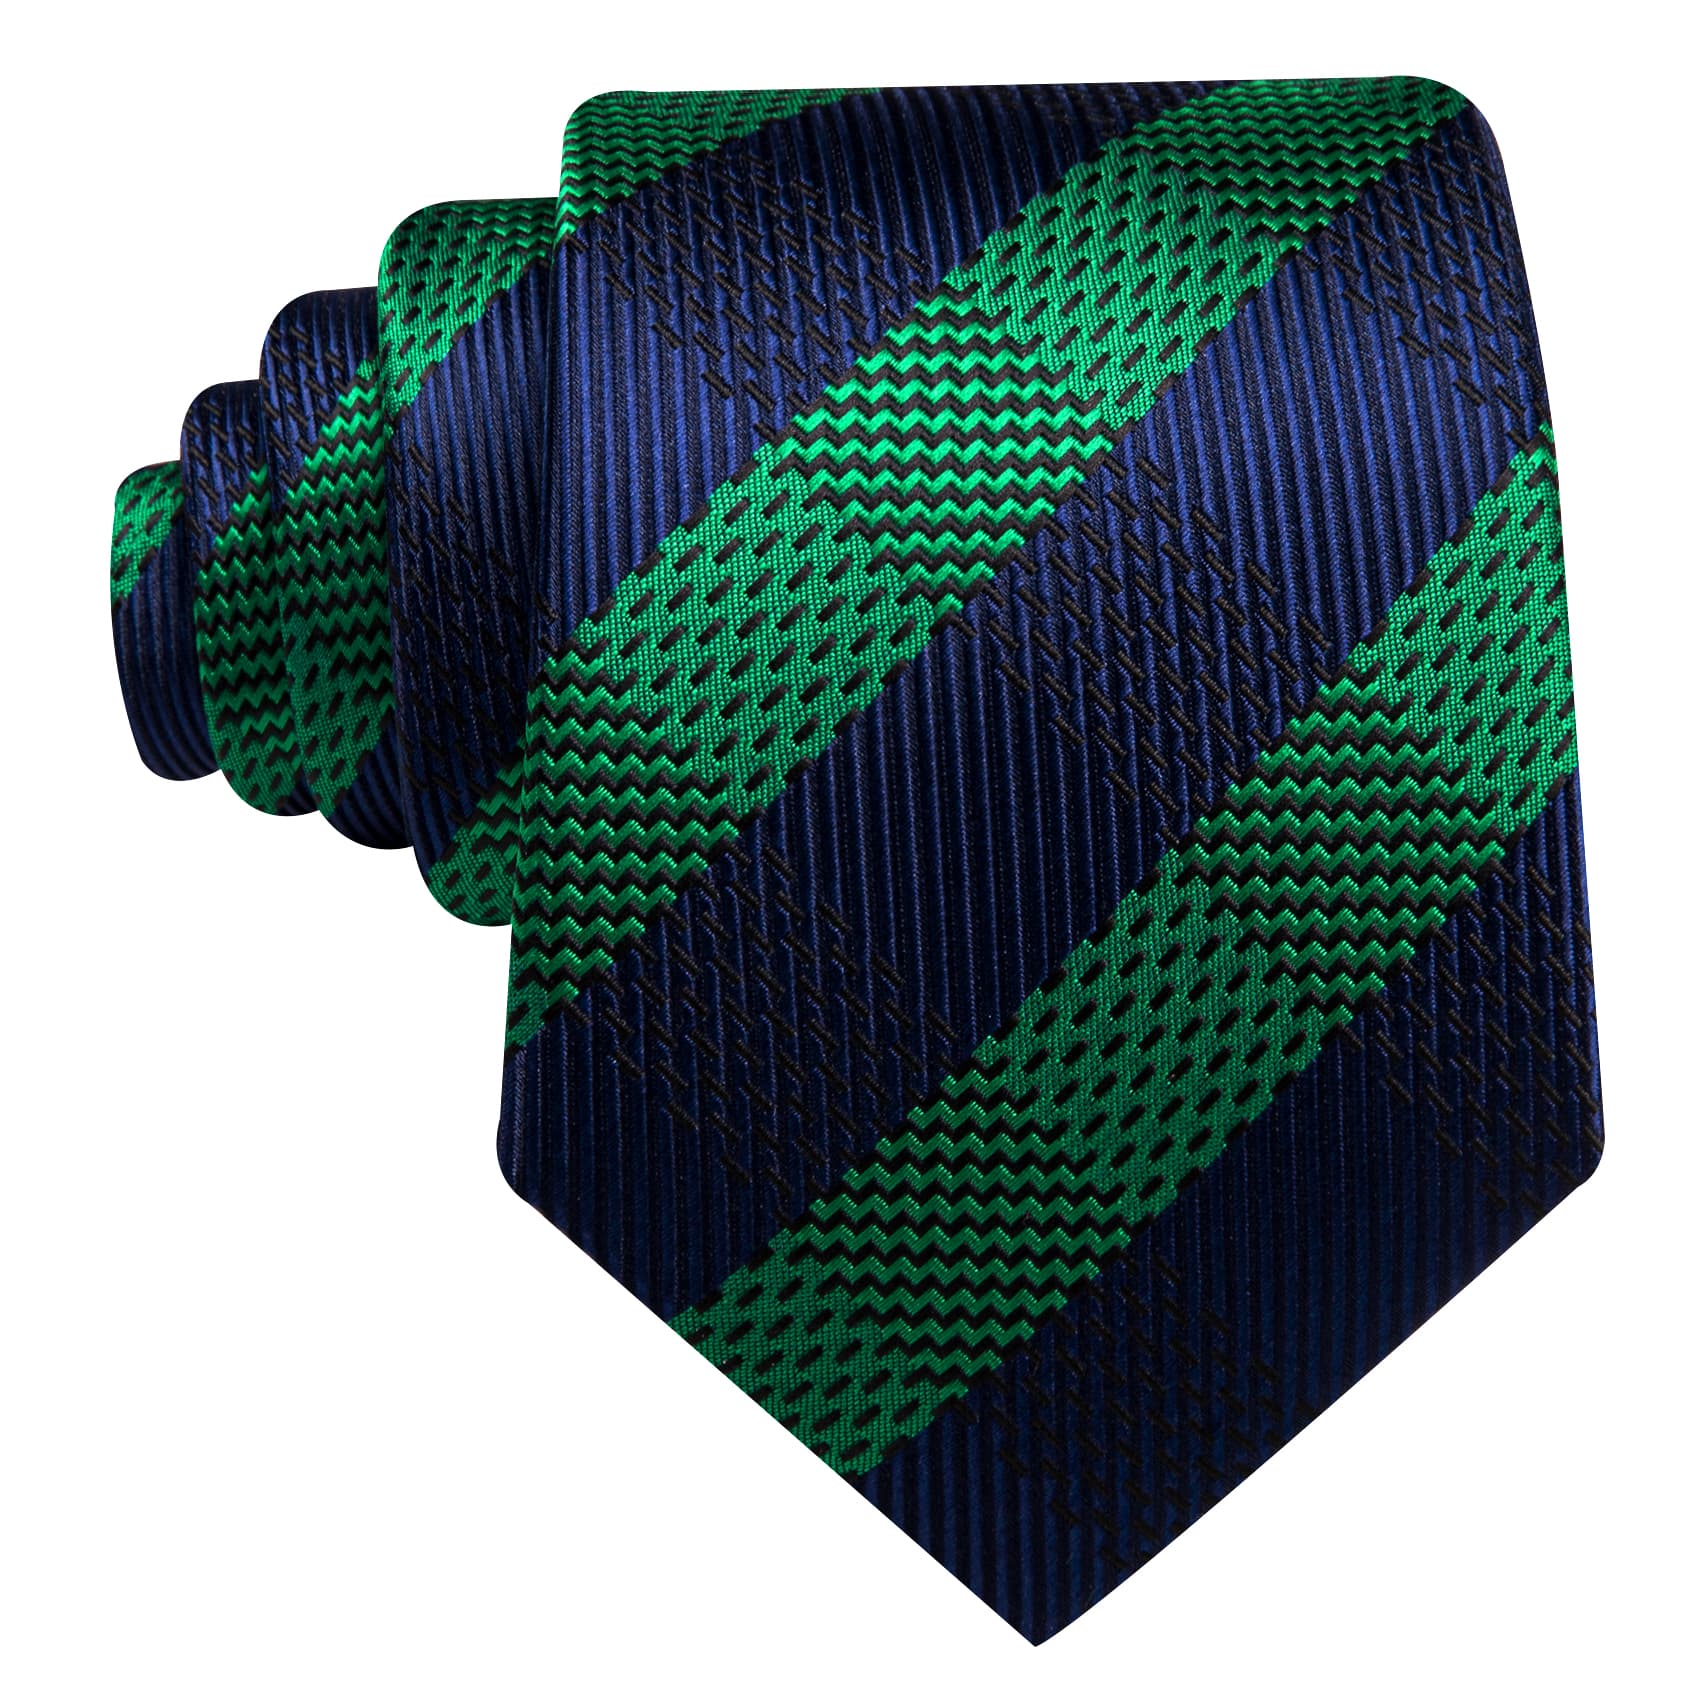  Mens Tie Striped Black Green Necktie Hanky Cufflinks Set